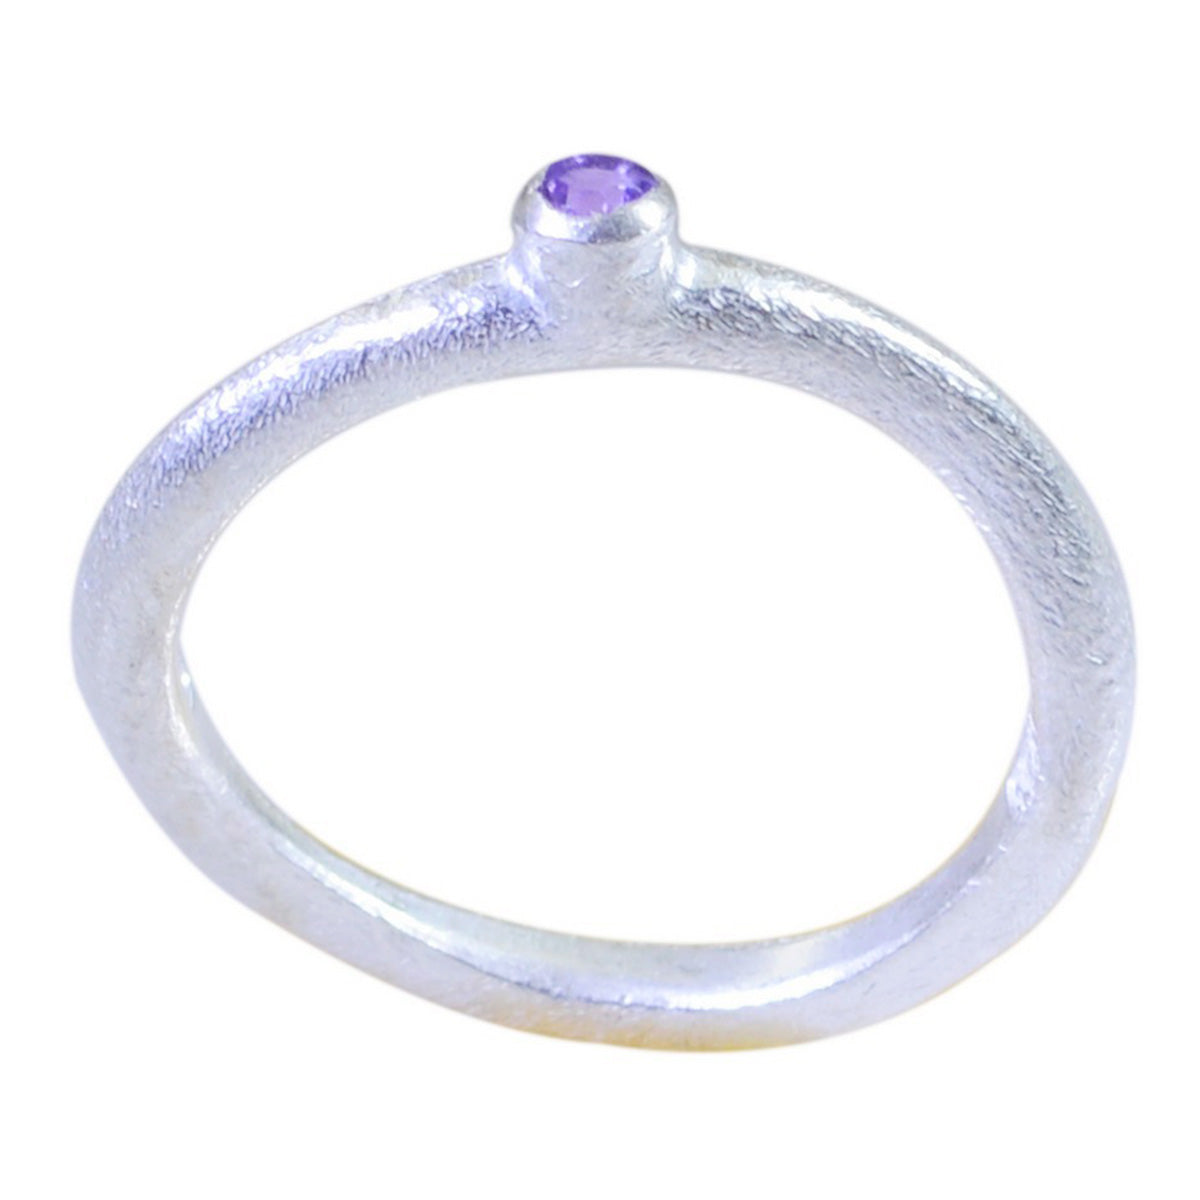 Riyo Nubile Gem Amethyst 925 Silver Ring Birthstone Jewelry For Moms